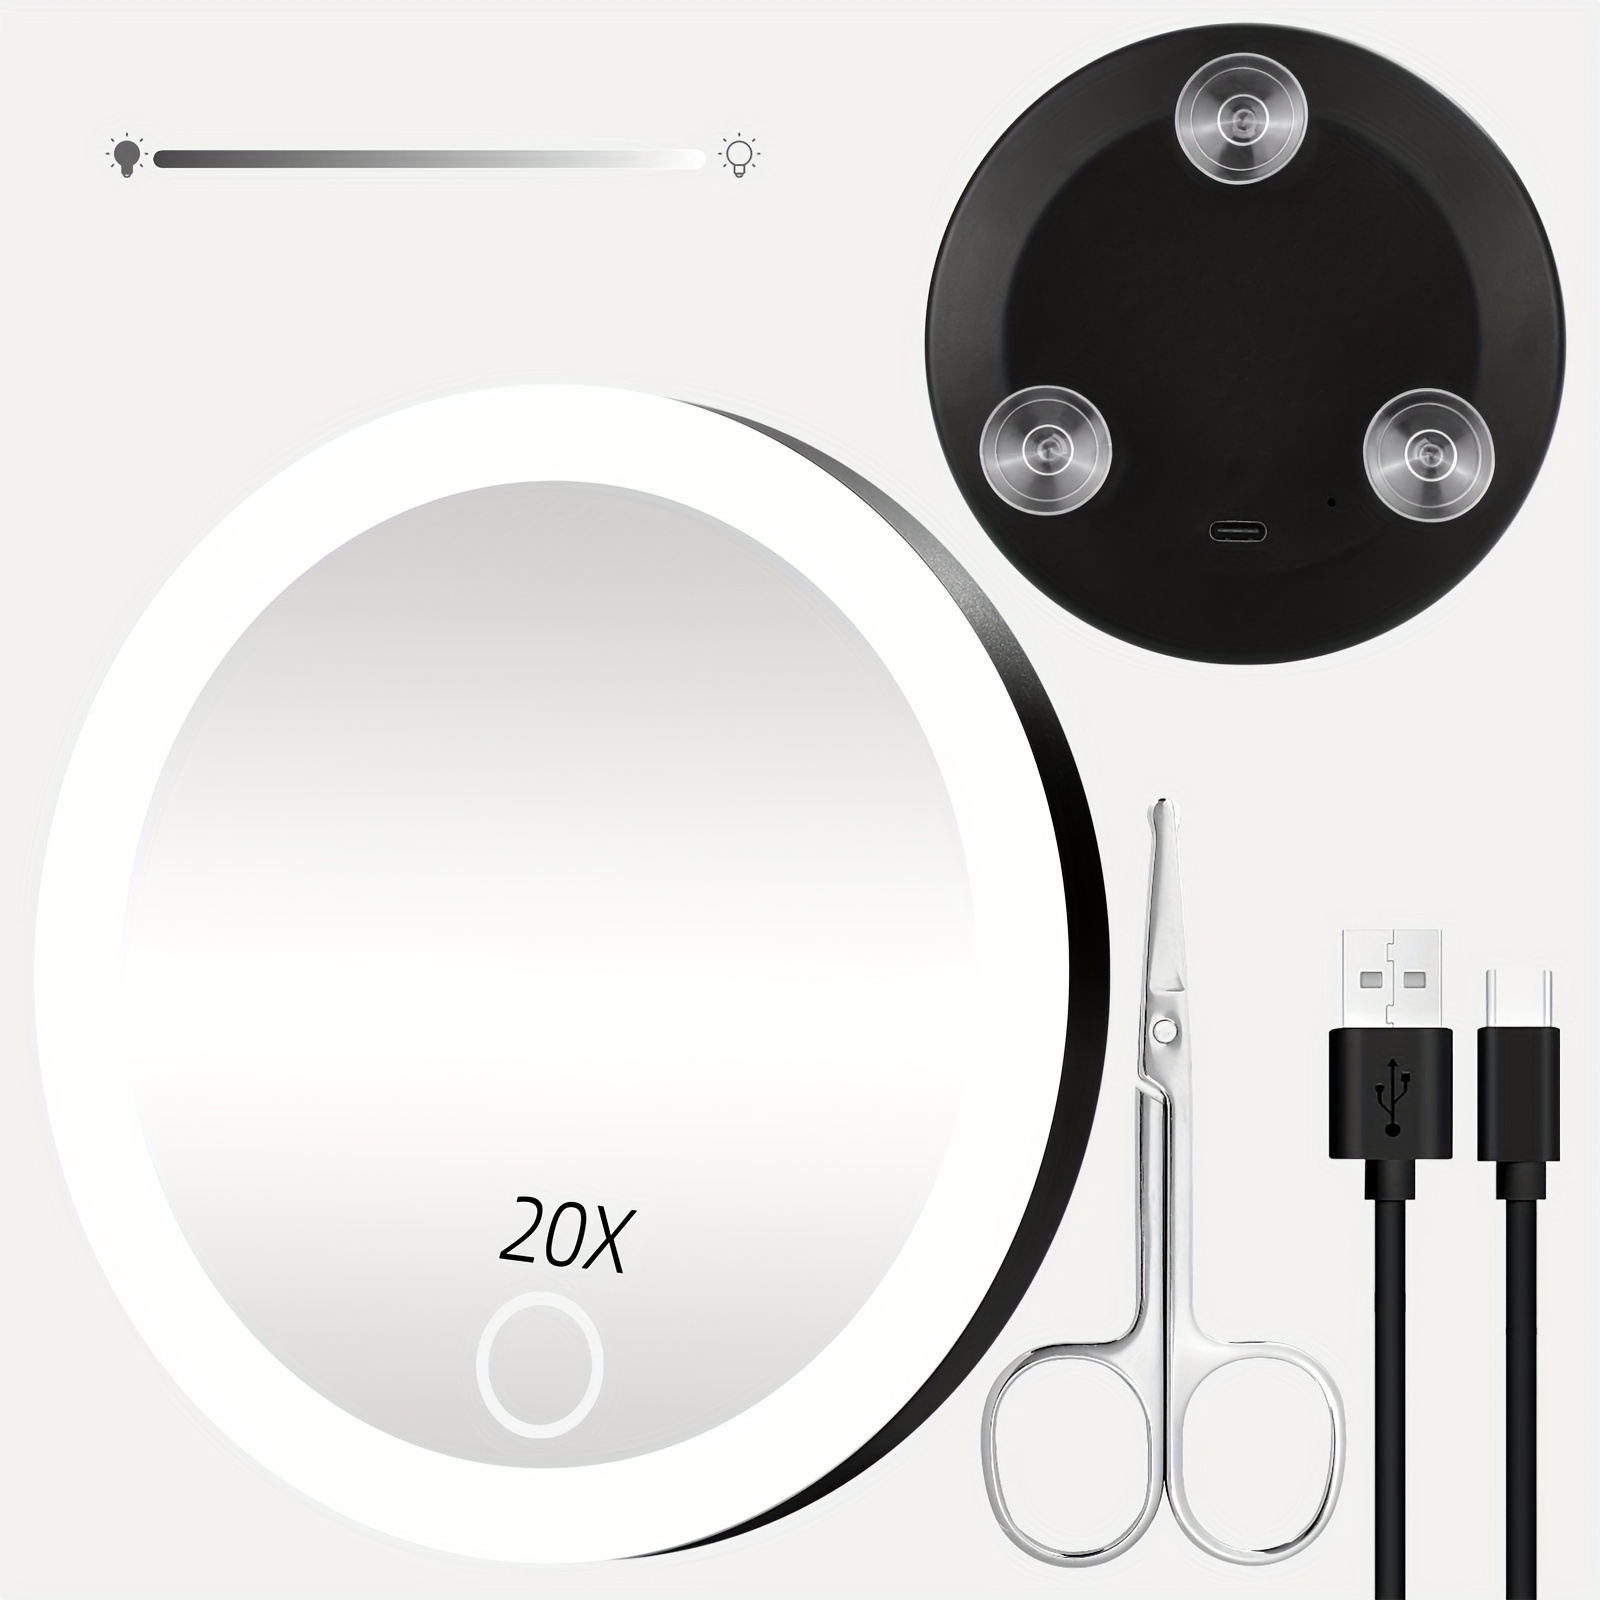 Tweezerman Mini Espejo Luz LED Aumento de 15x – Kokoro MX